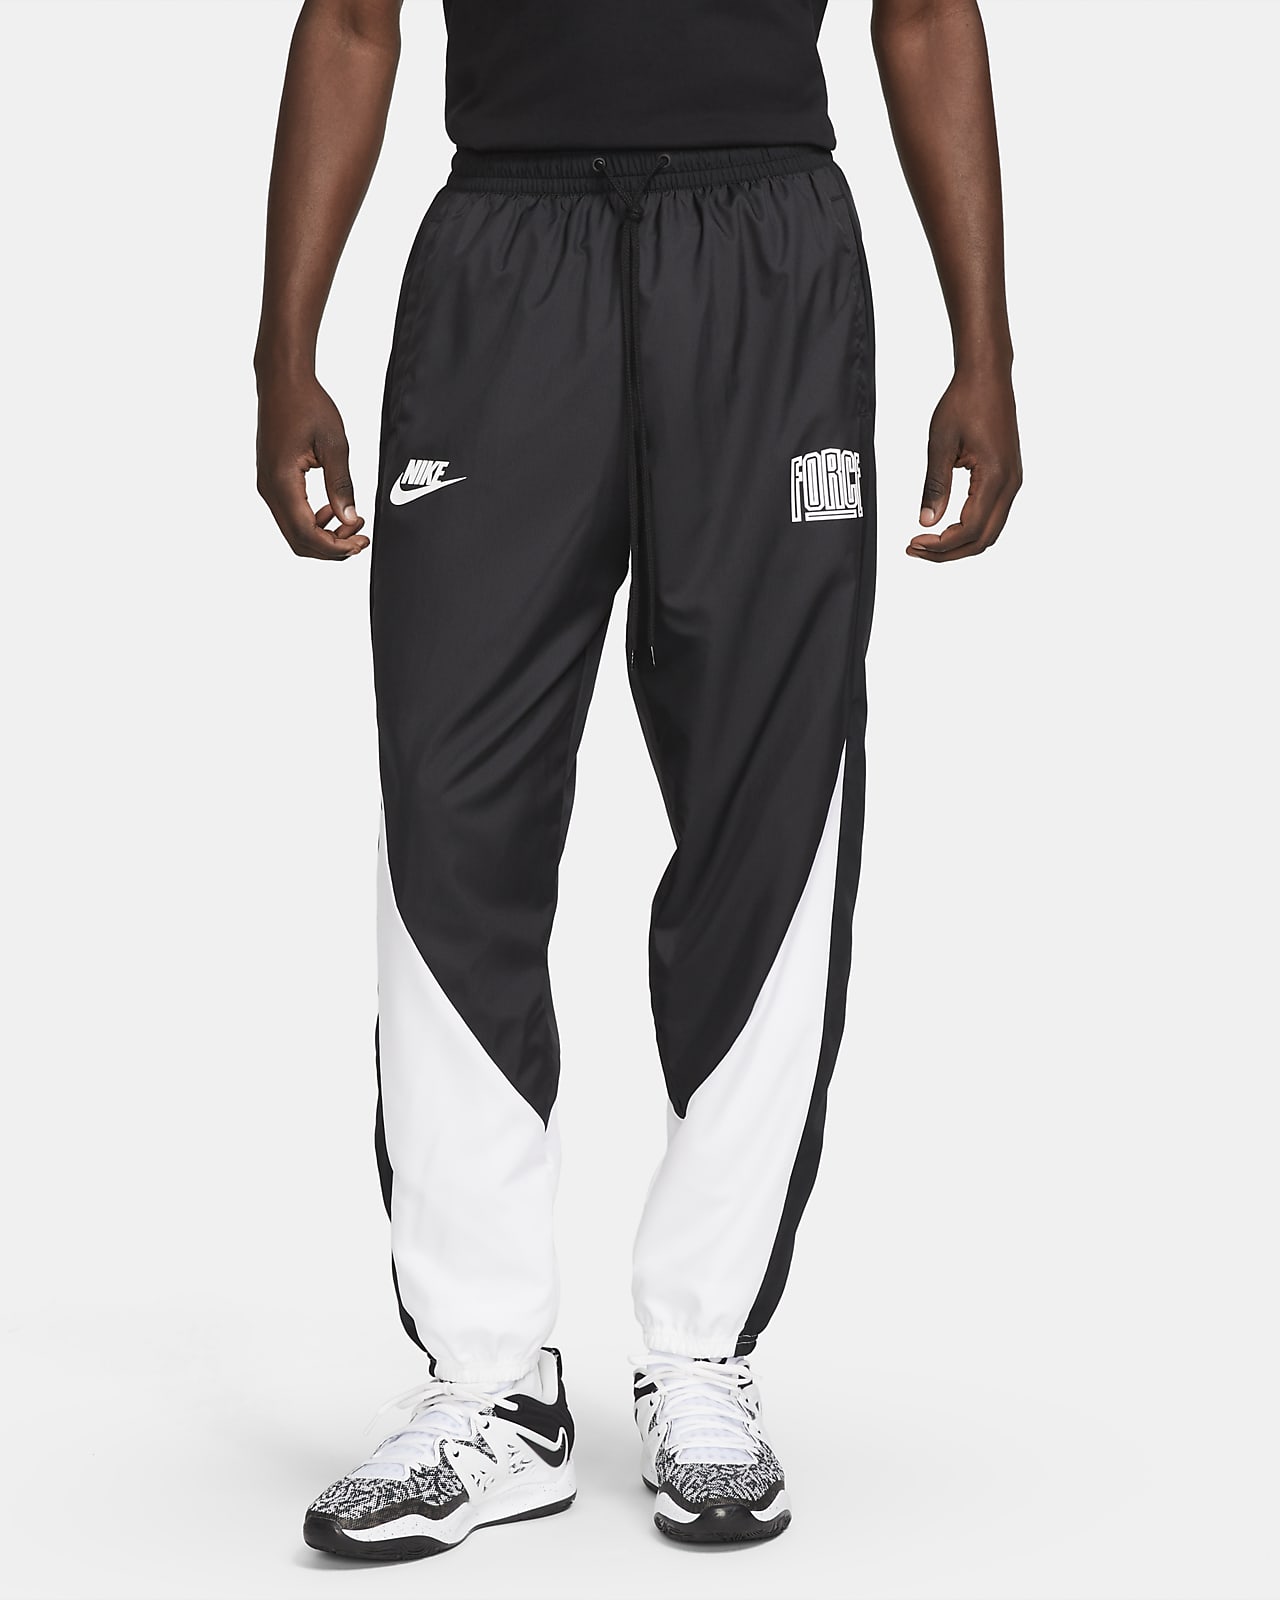 Nike Starting 5 Herren-Basketballhose